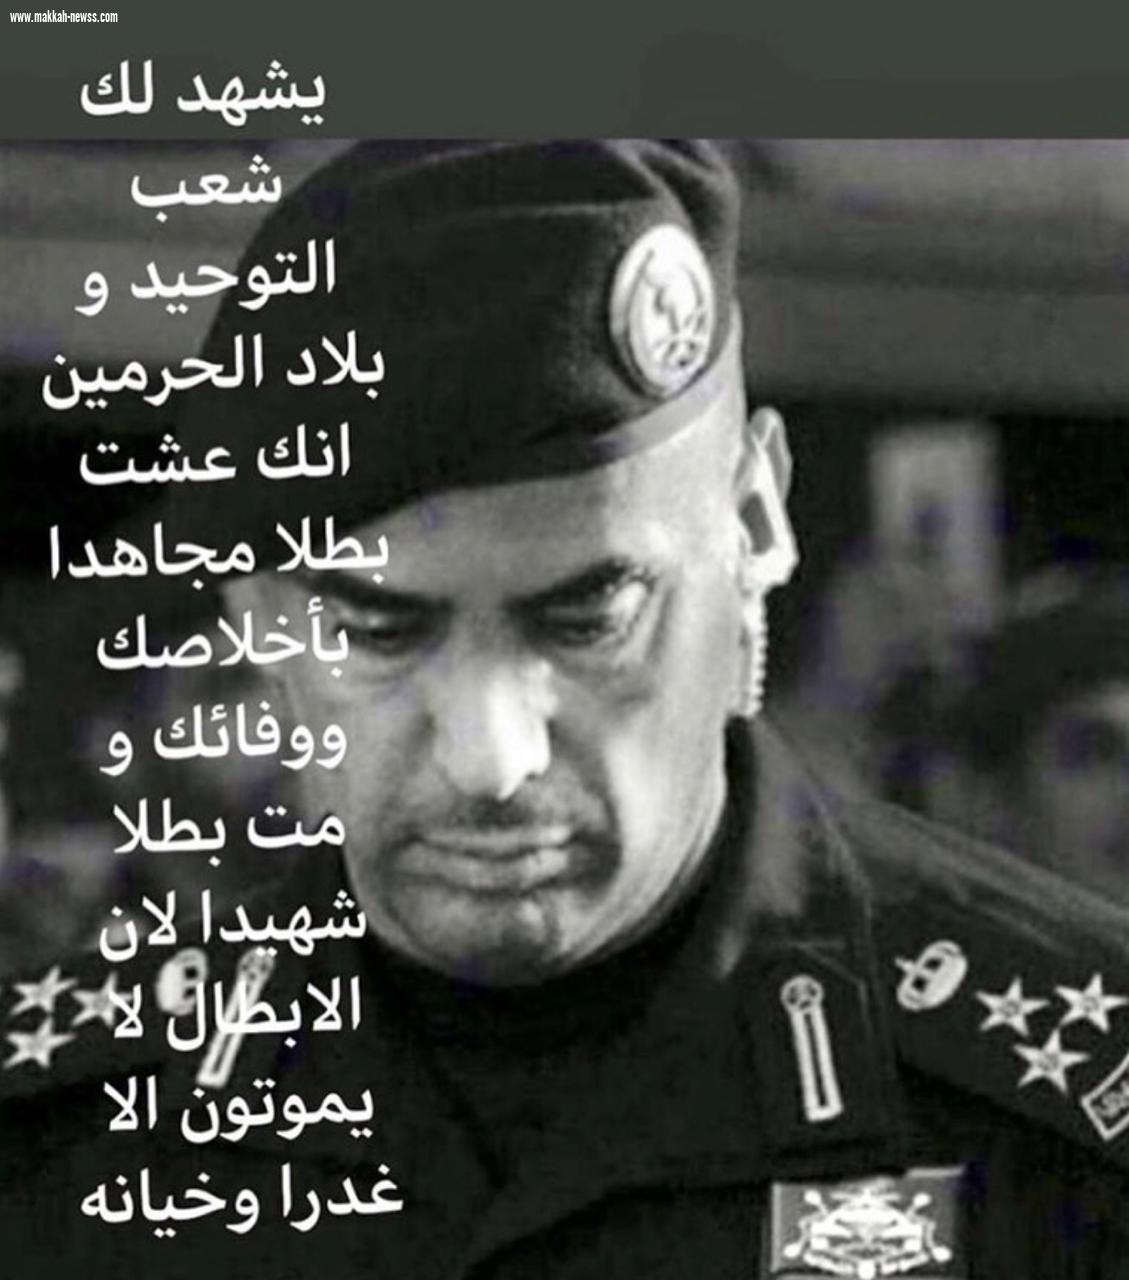 وفاة اللواء عبدالعزيز الفغم الحارس الشخصي لخادم الحرمين الشريفين